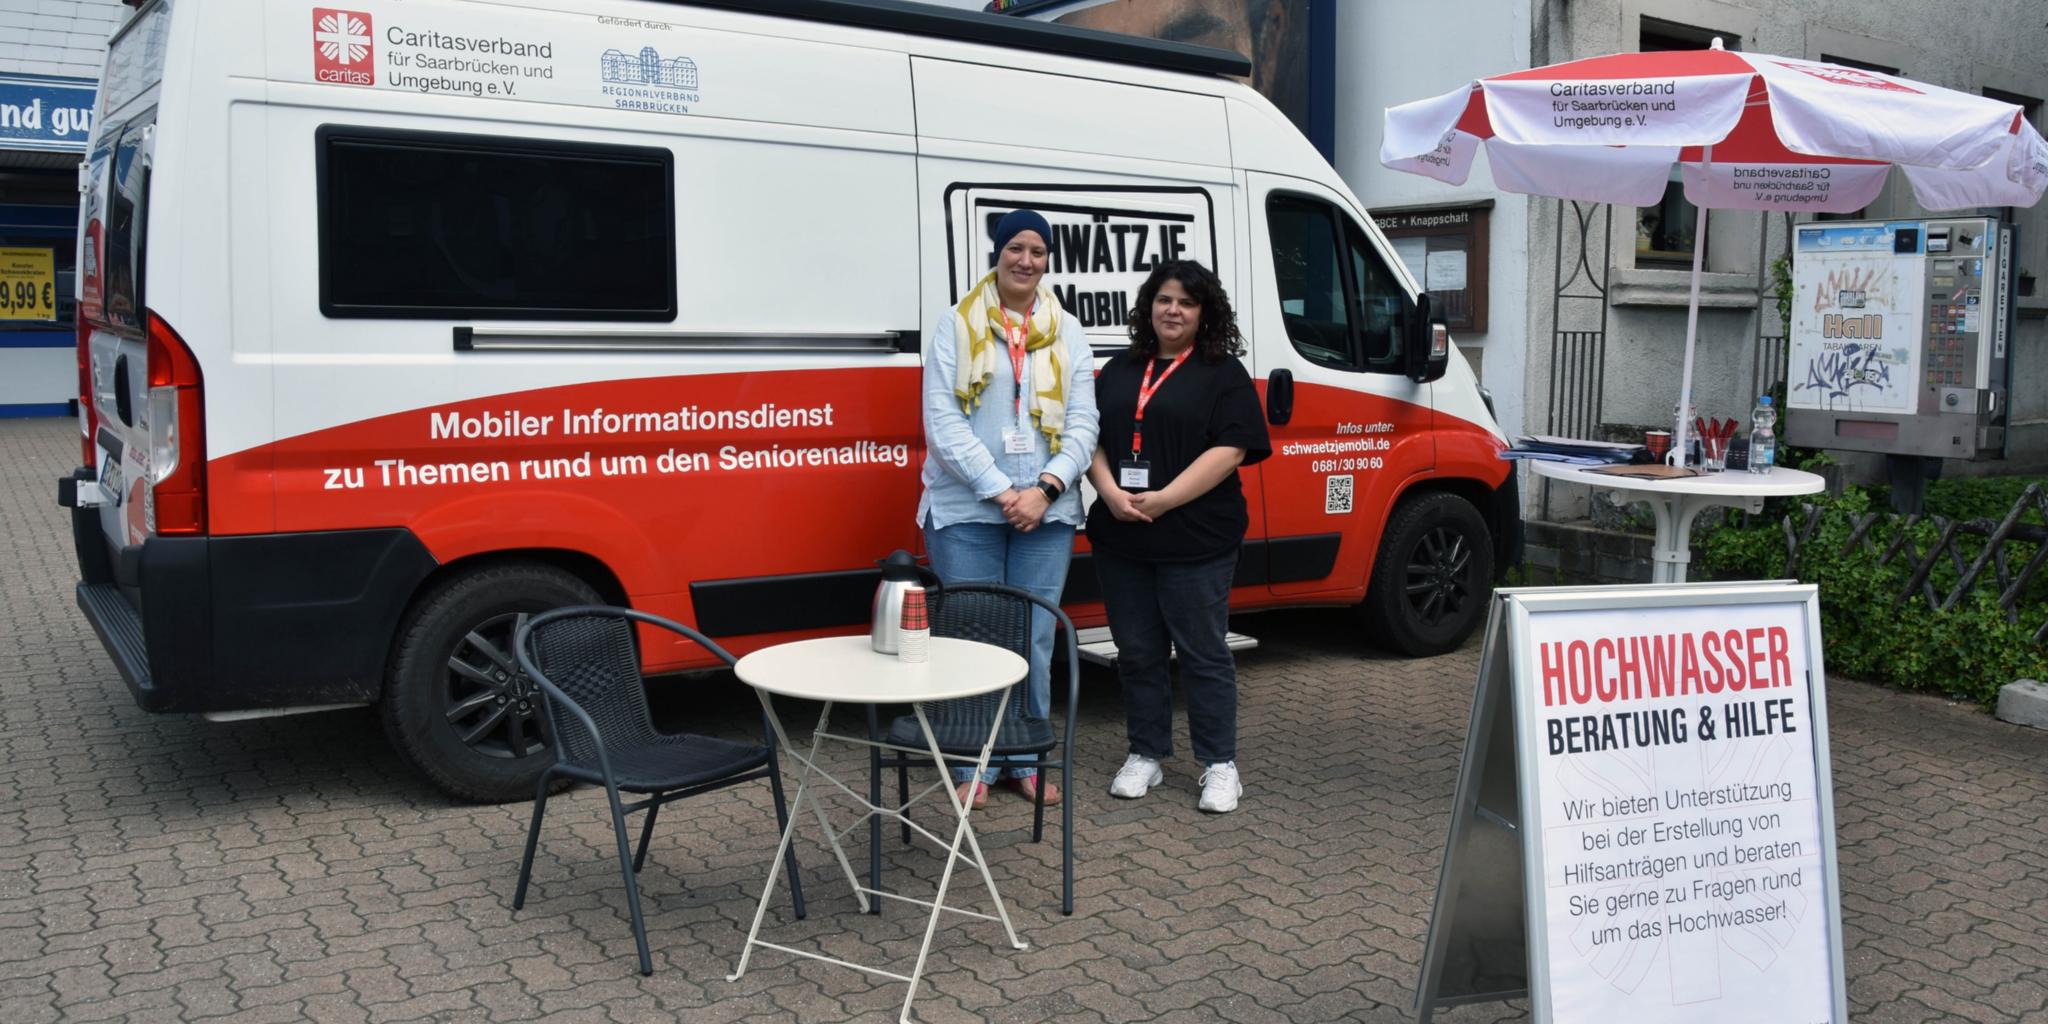 Amina Belaredj und Hannan Chalabi vom Caritasverband Saarbrücken und Umgebung e.V. beraten in Lauterbach Hochwasserbetroffene.